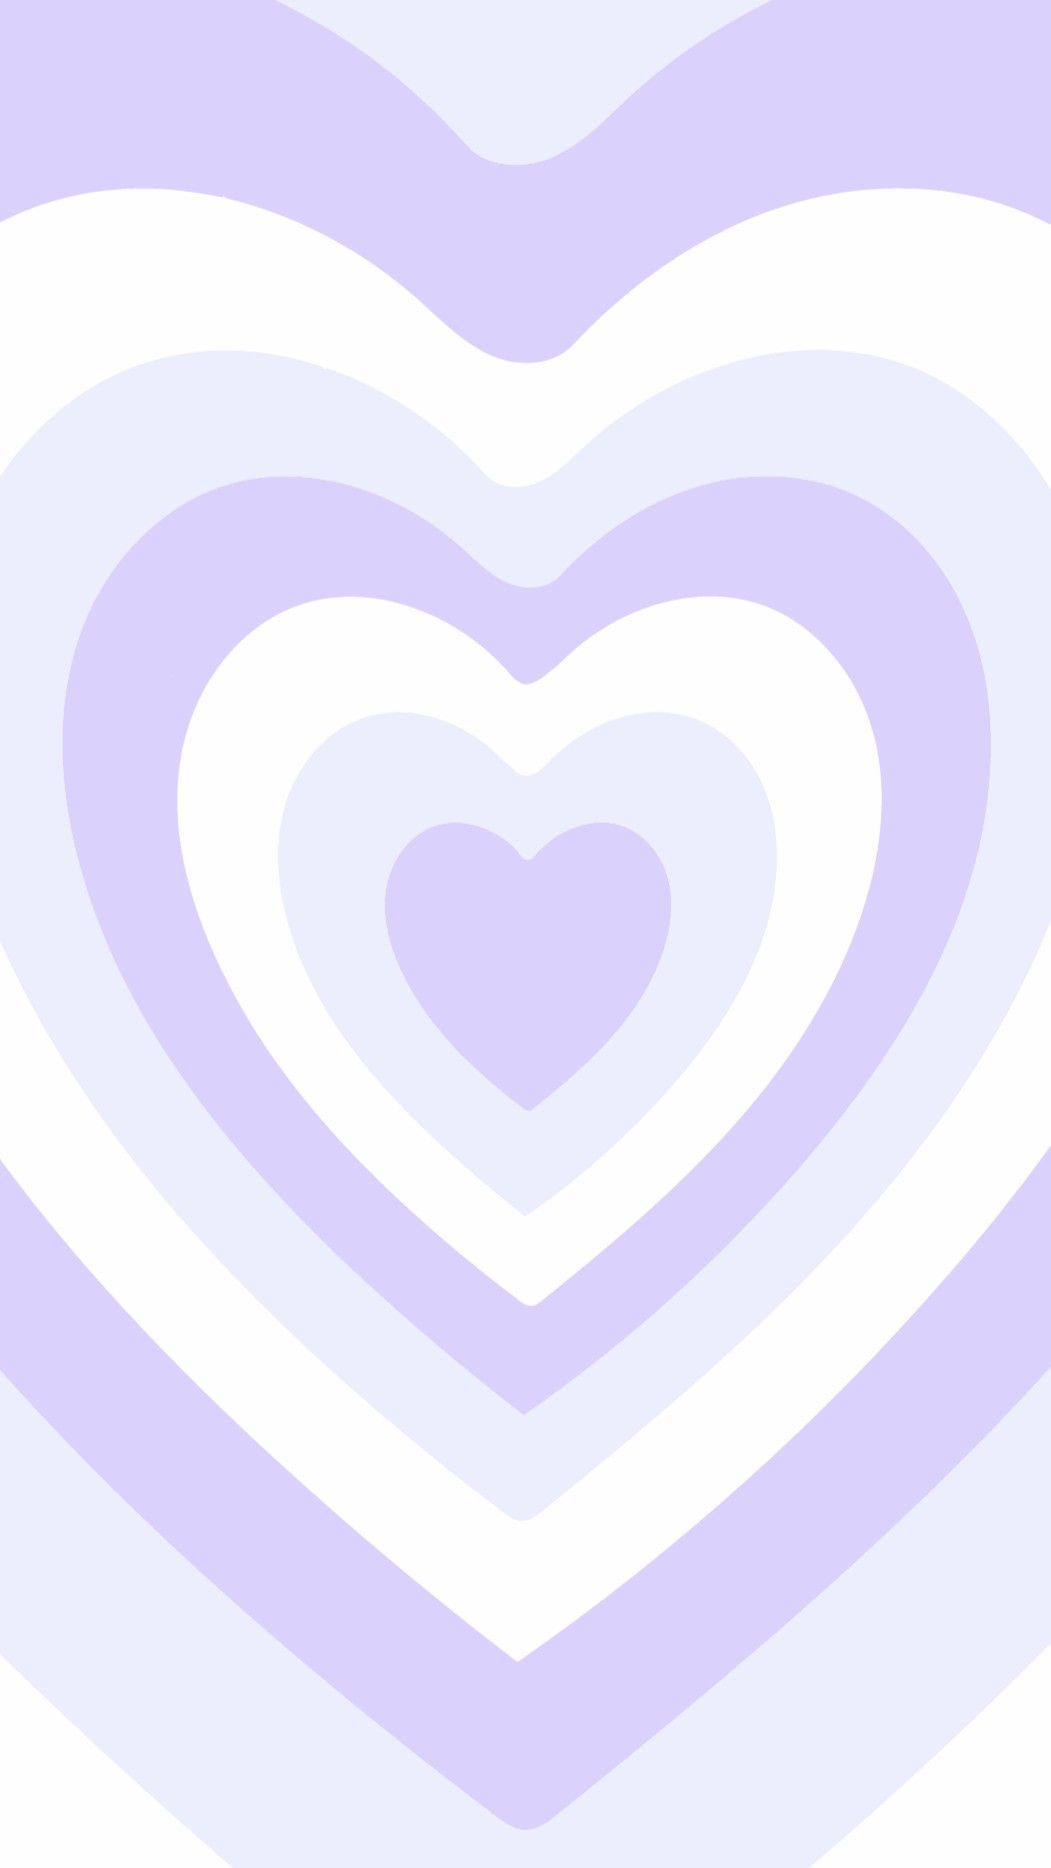 A purple heart shaped pattern on white background - Y2K, heart